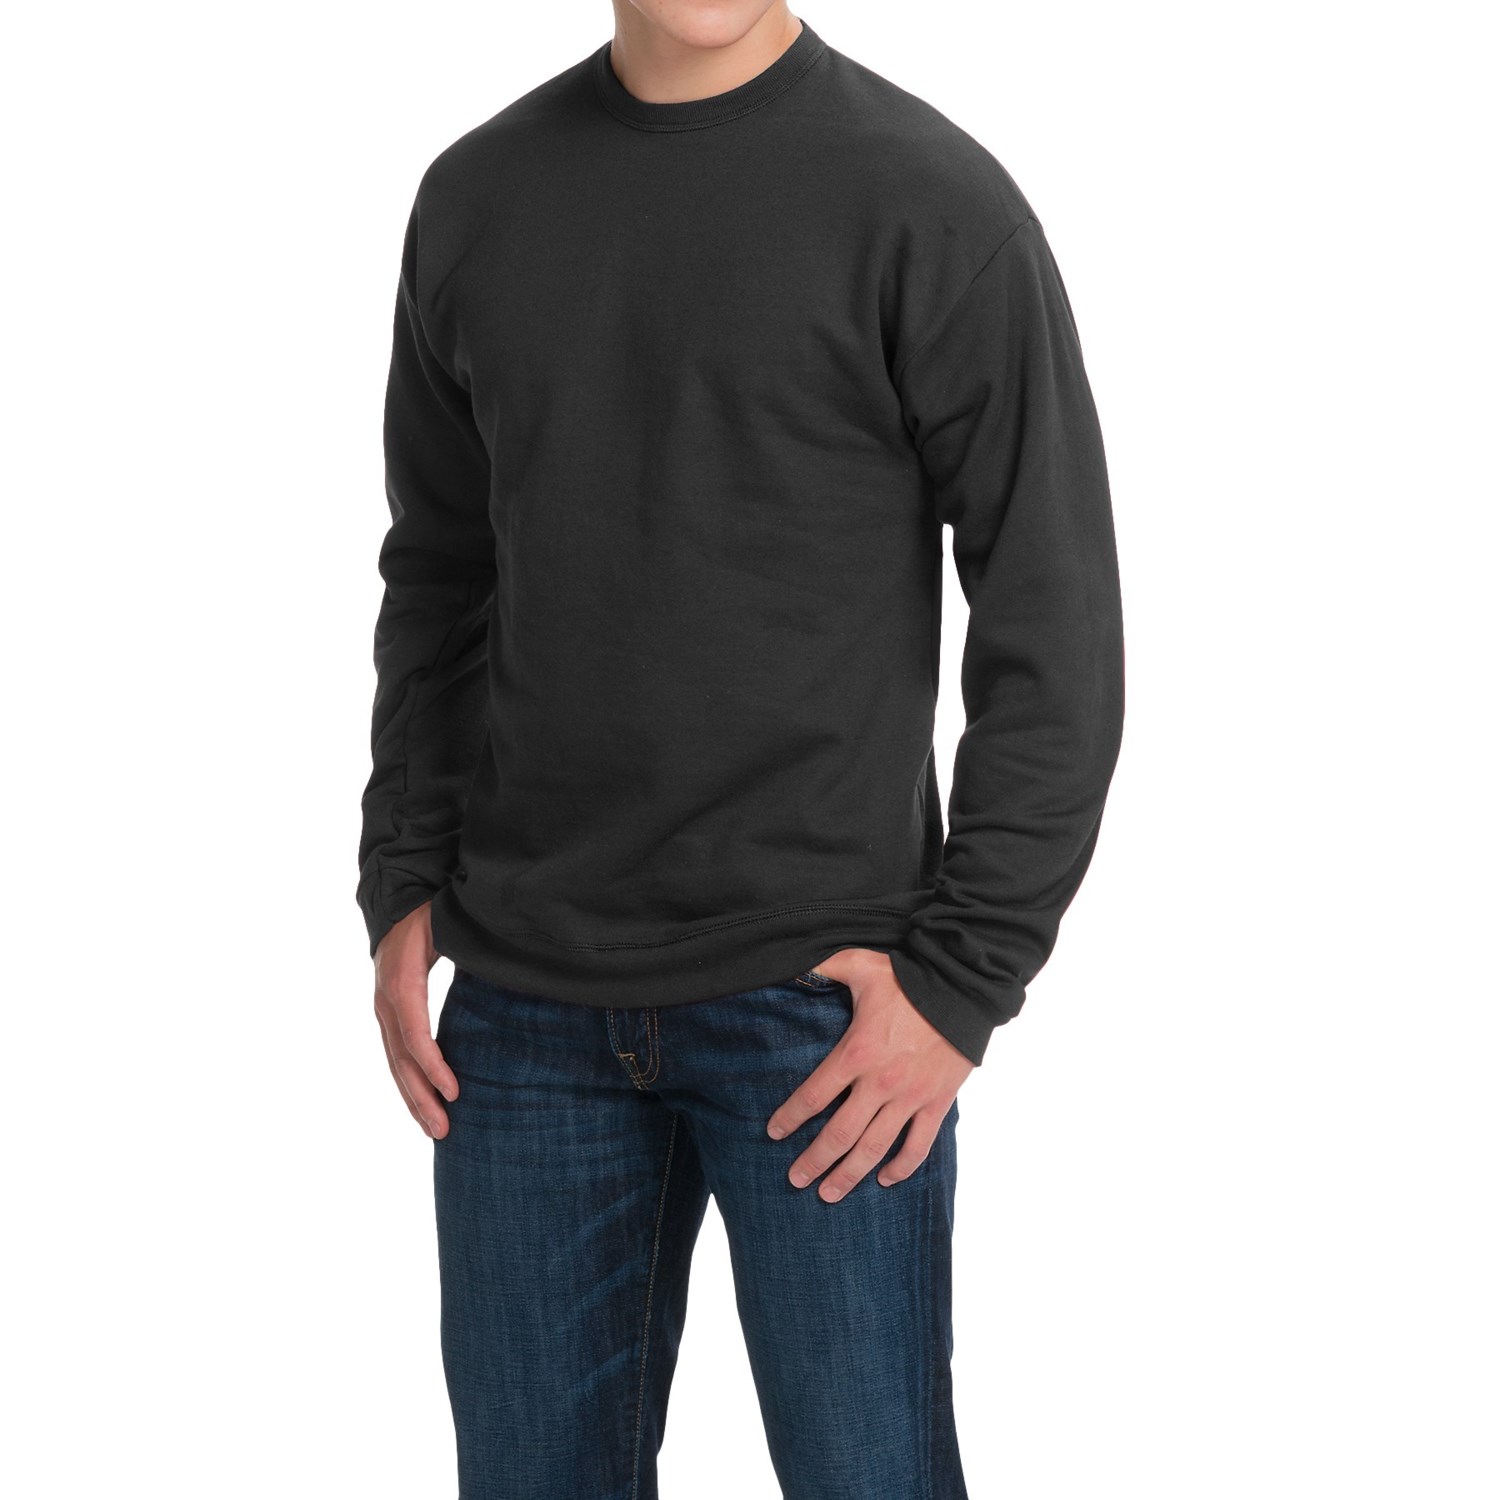 Hanes Premium EcoSmart Sweatshirt (For Men and Women) - Save 64%